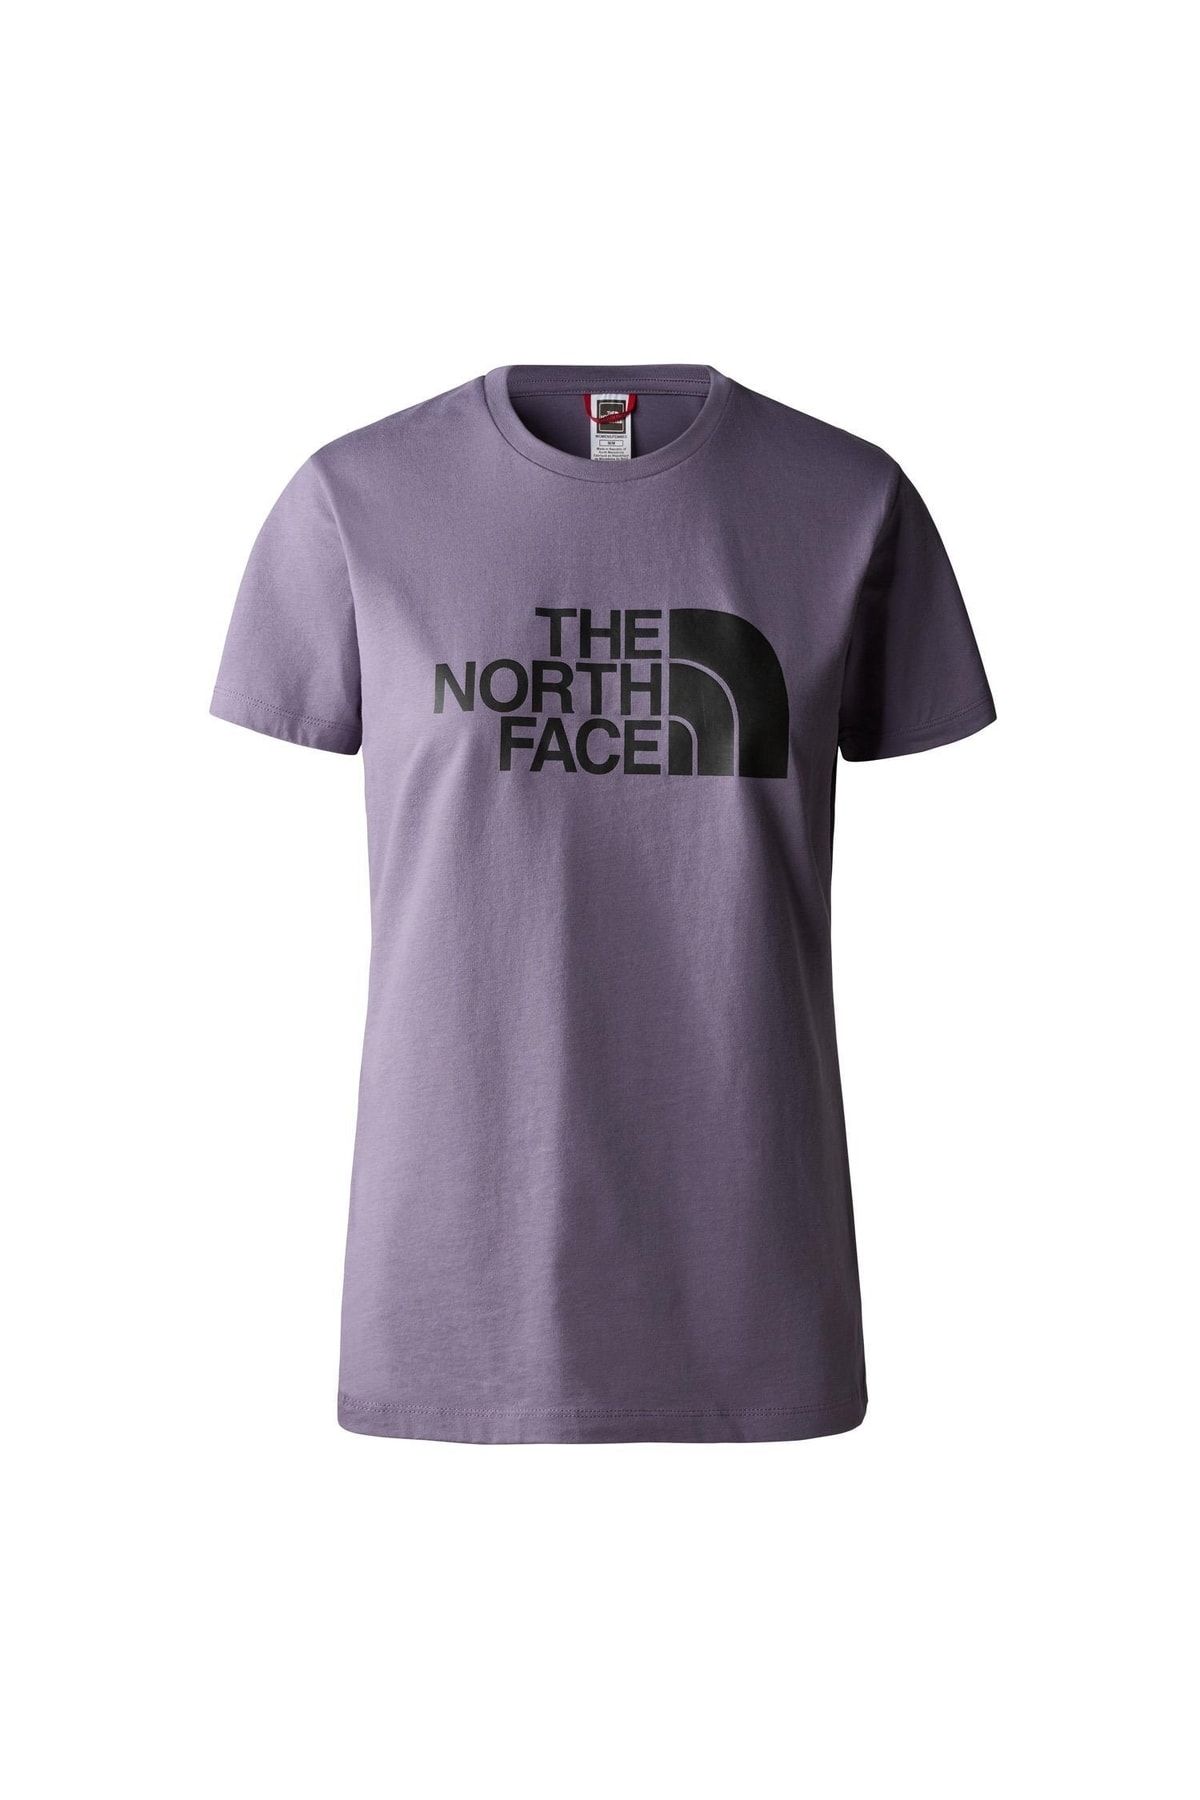 The North Face W S/s Easy Tee Kadın T-shirt Nf0a4t1qn141